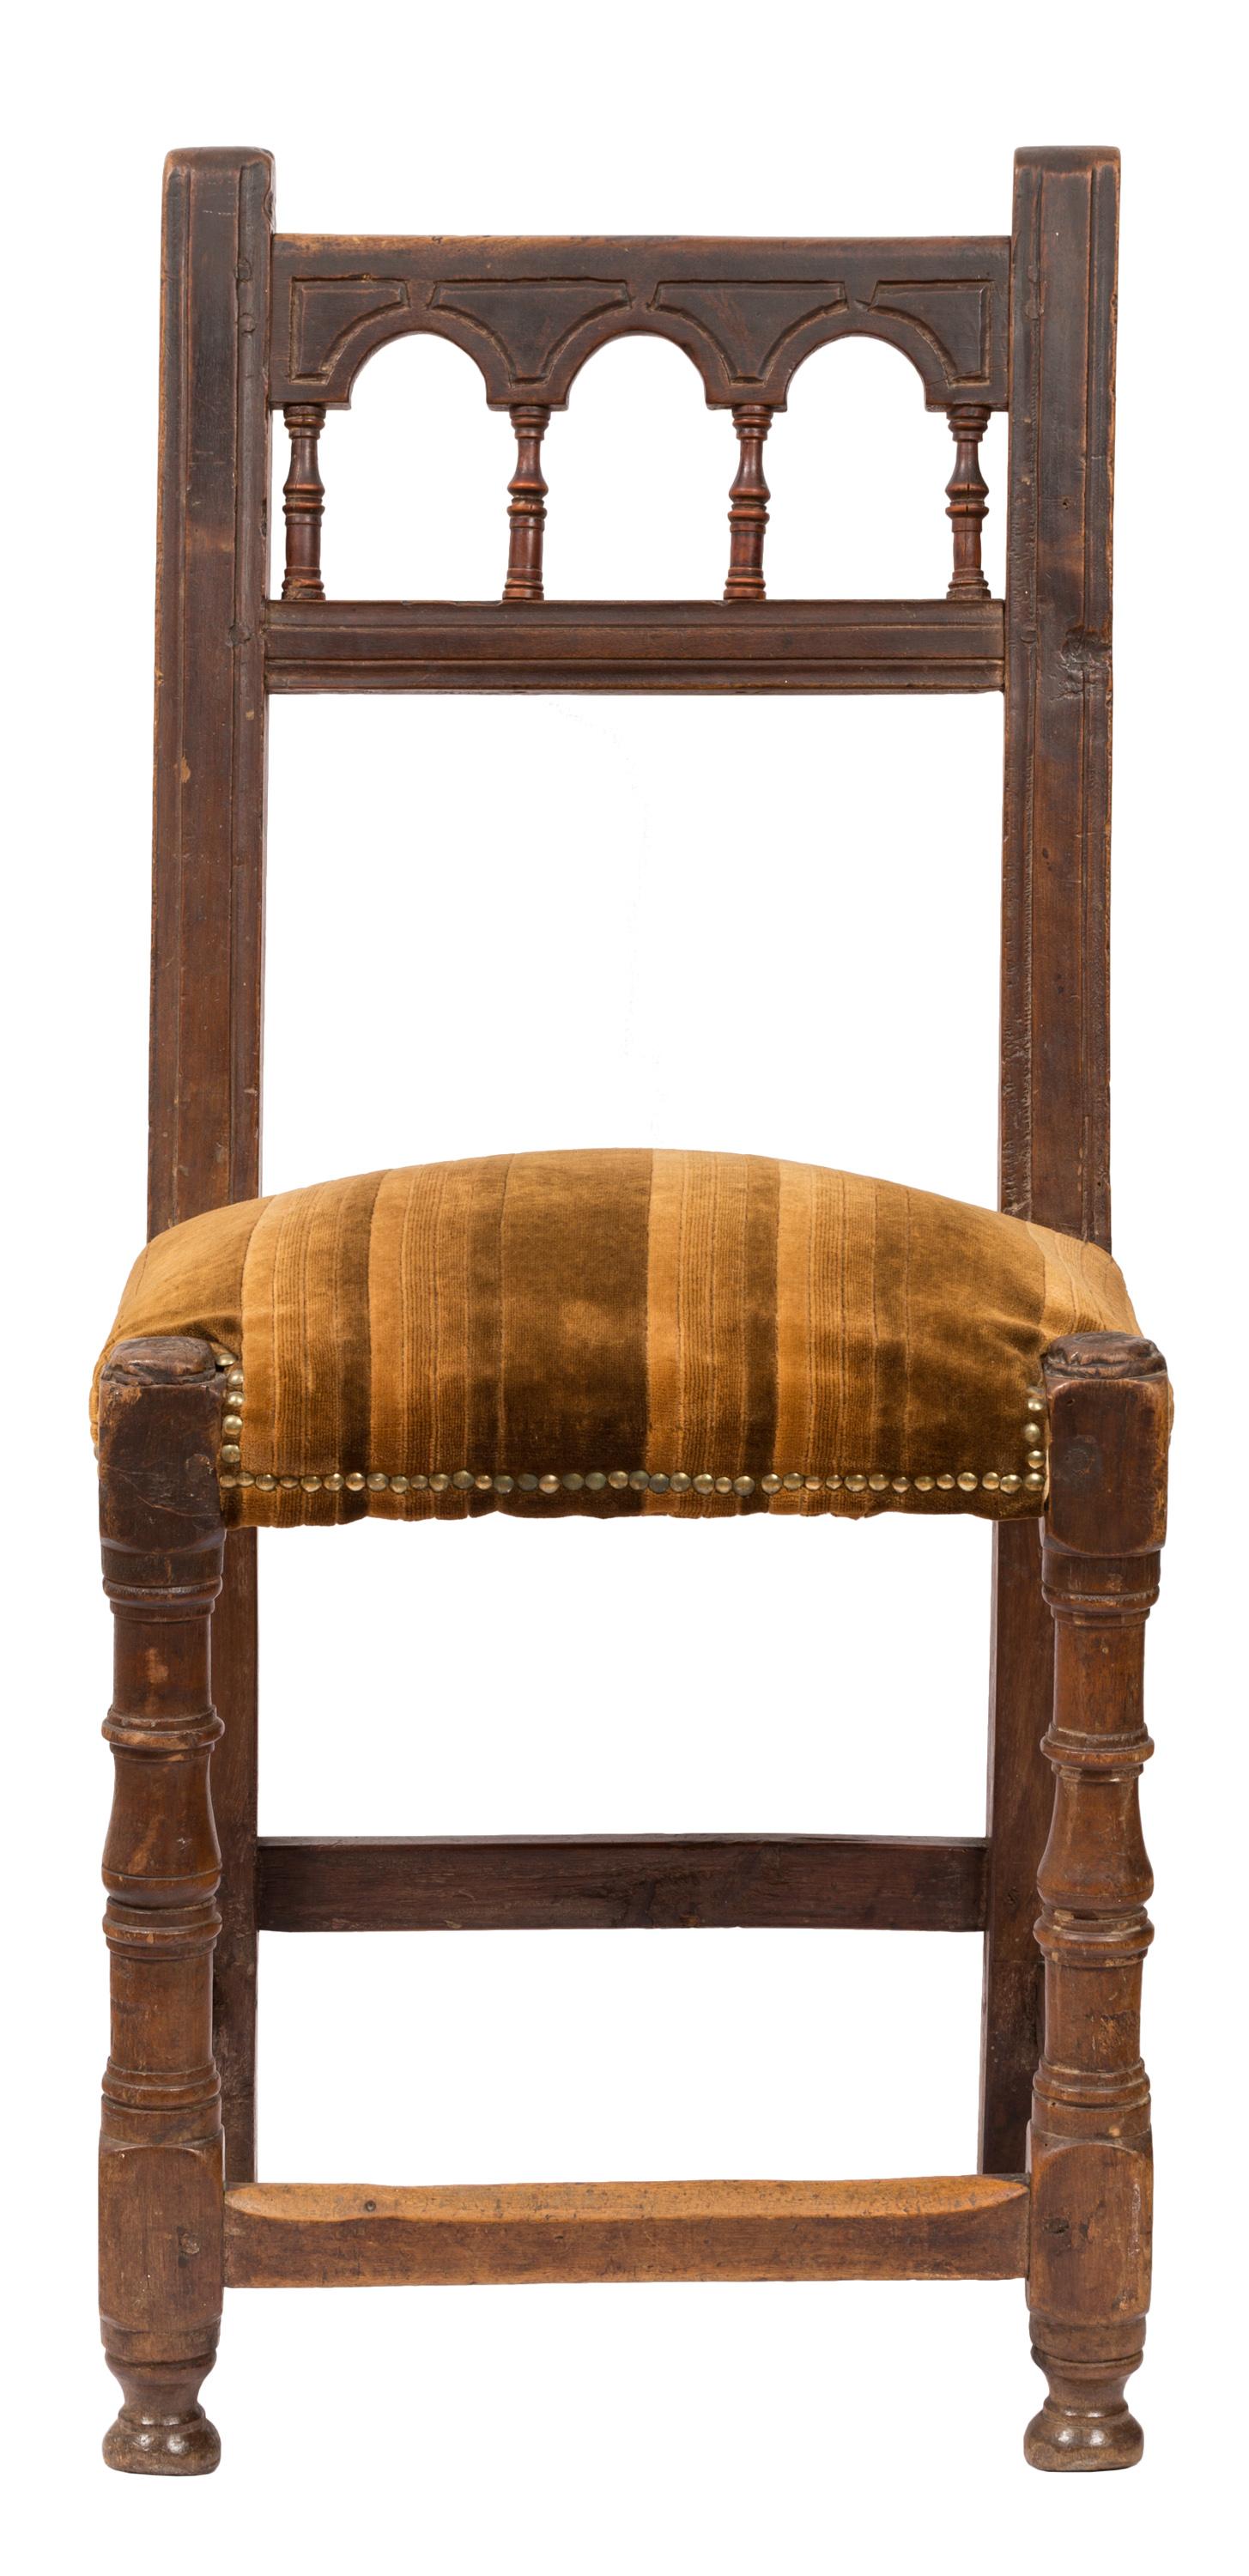 Un ensemble plus ou moins assorti de quatre chaises d'appoint de style rustique, suivant les traditions de design populaires de la province de Navarre, au Pays basque, dans le nord de l'Espagne. Ces chaises sont à la fois robustes et artistiques,